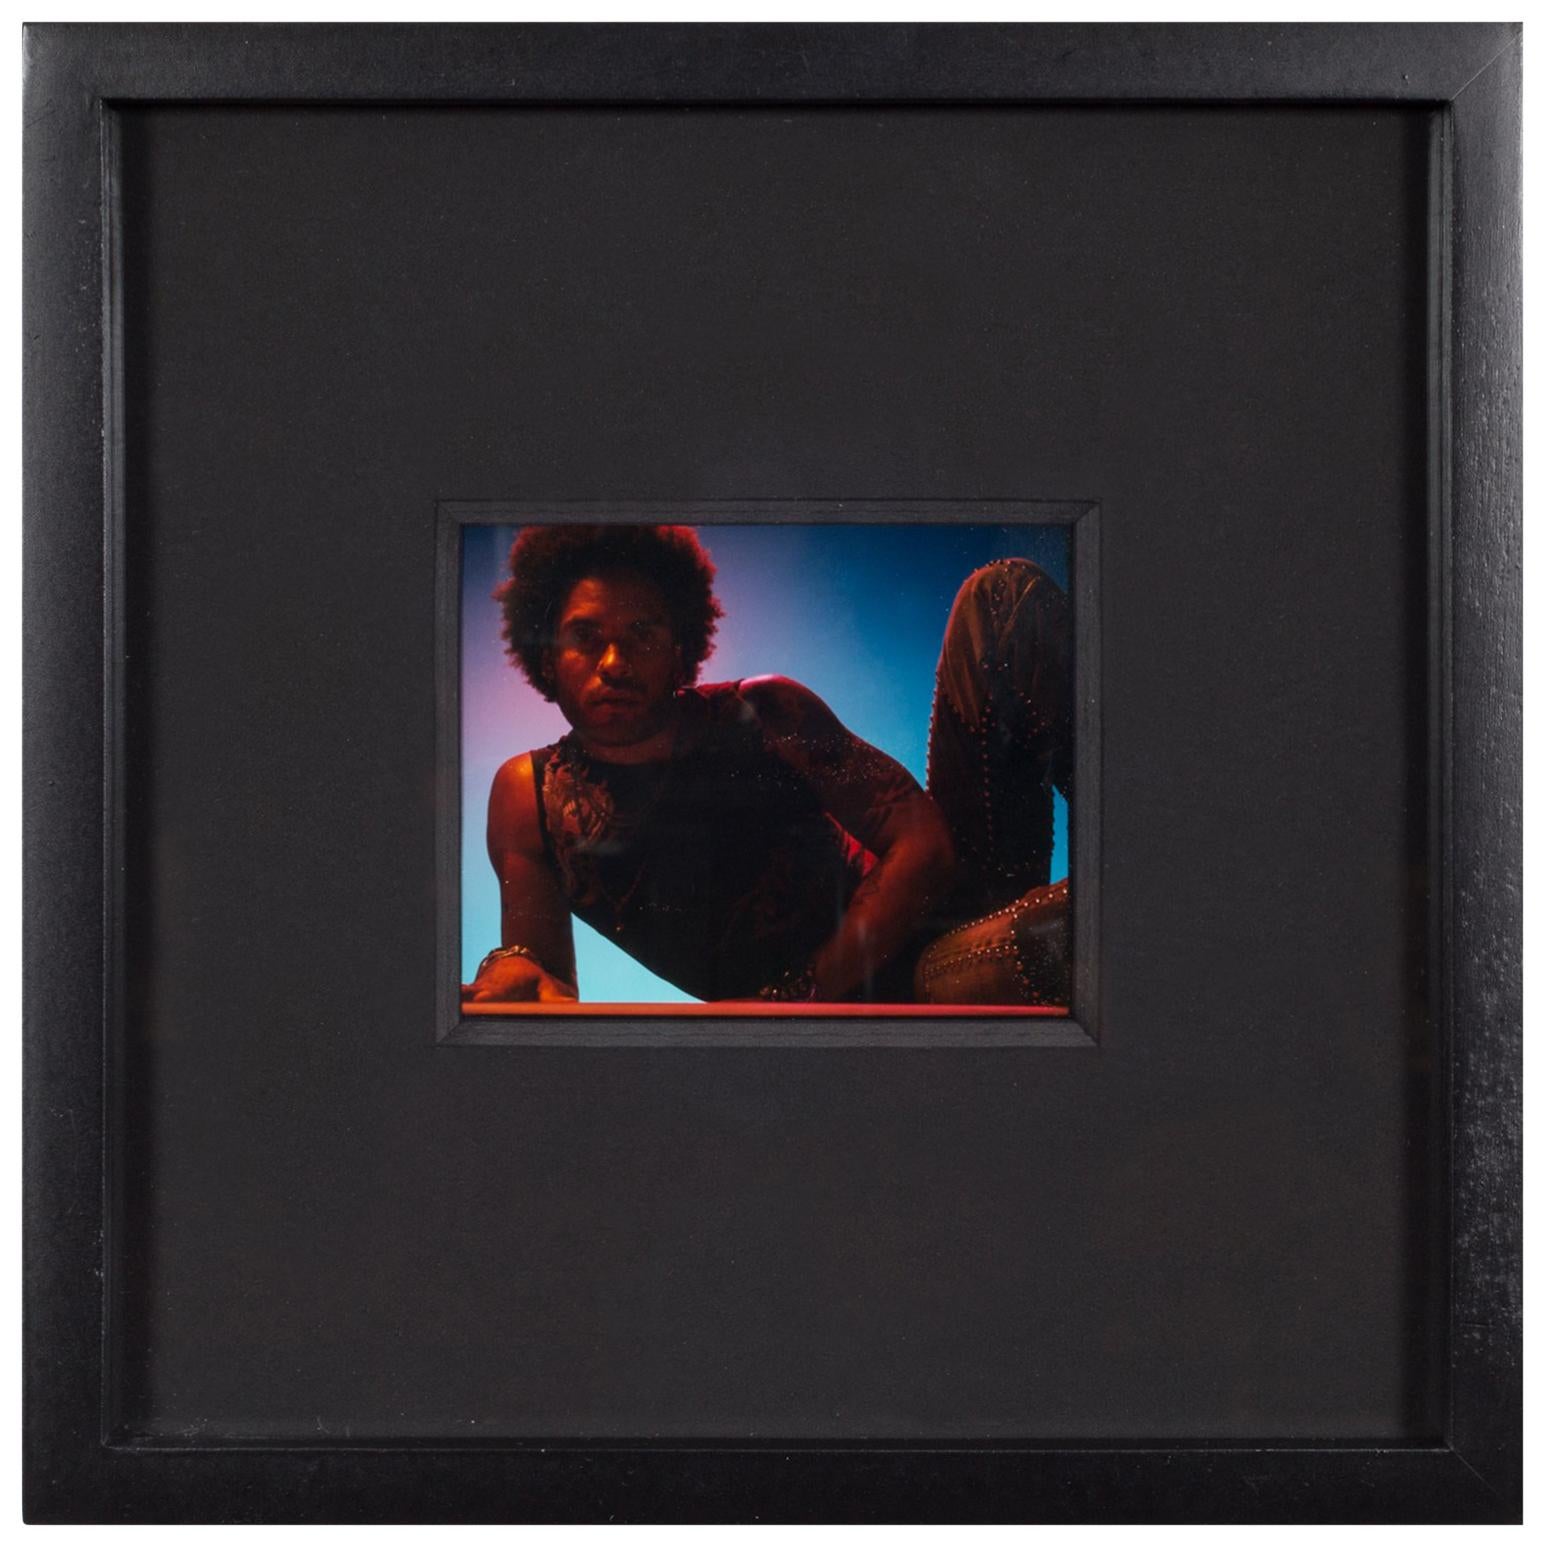 Polaroid Test Image of Lenny Kravitz by Denise Tarantino for Dah Len Studios